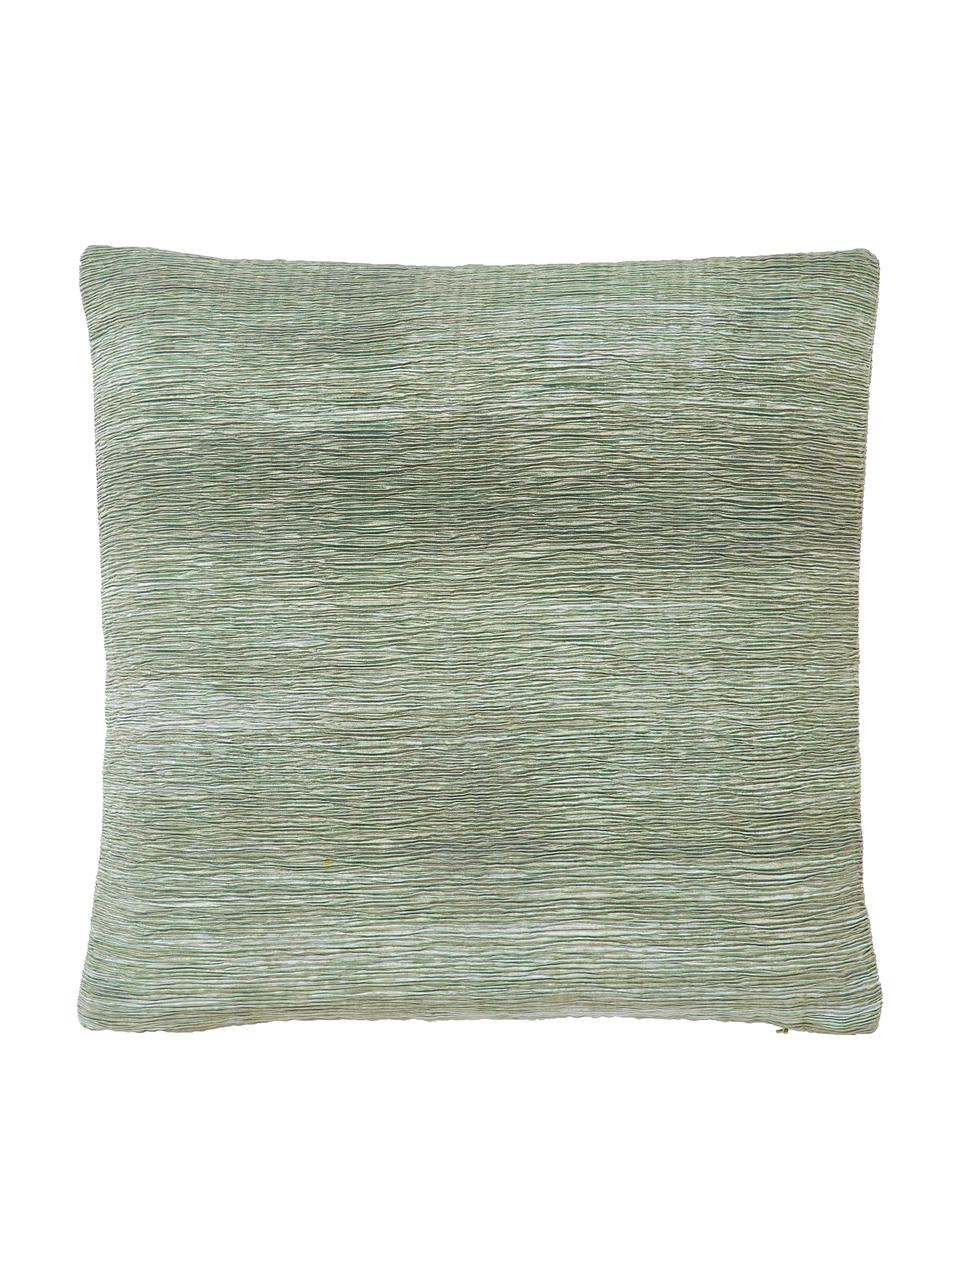 Poszewka na poduszkę Aline, 100% poliester, Zielony, S 45 x D 45 cm